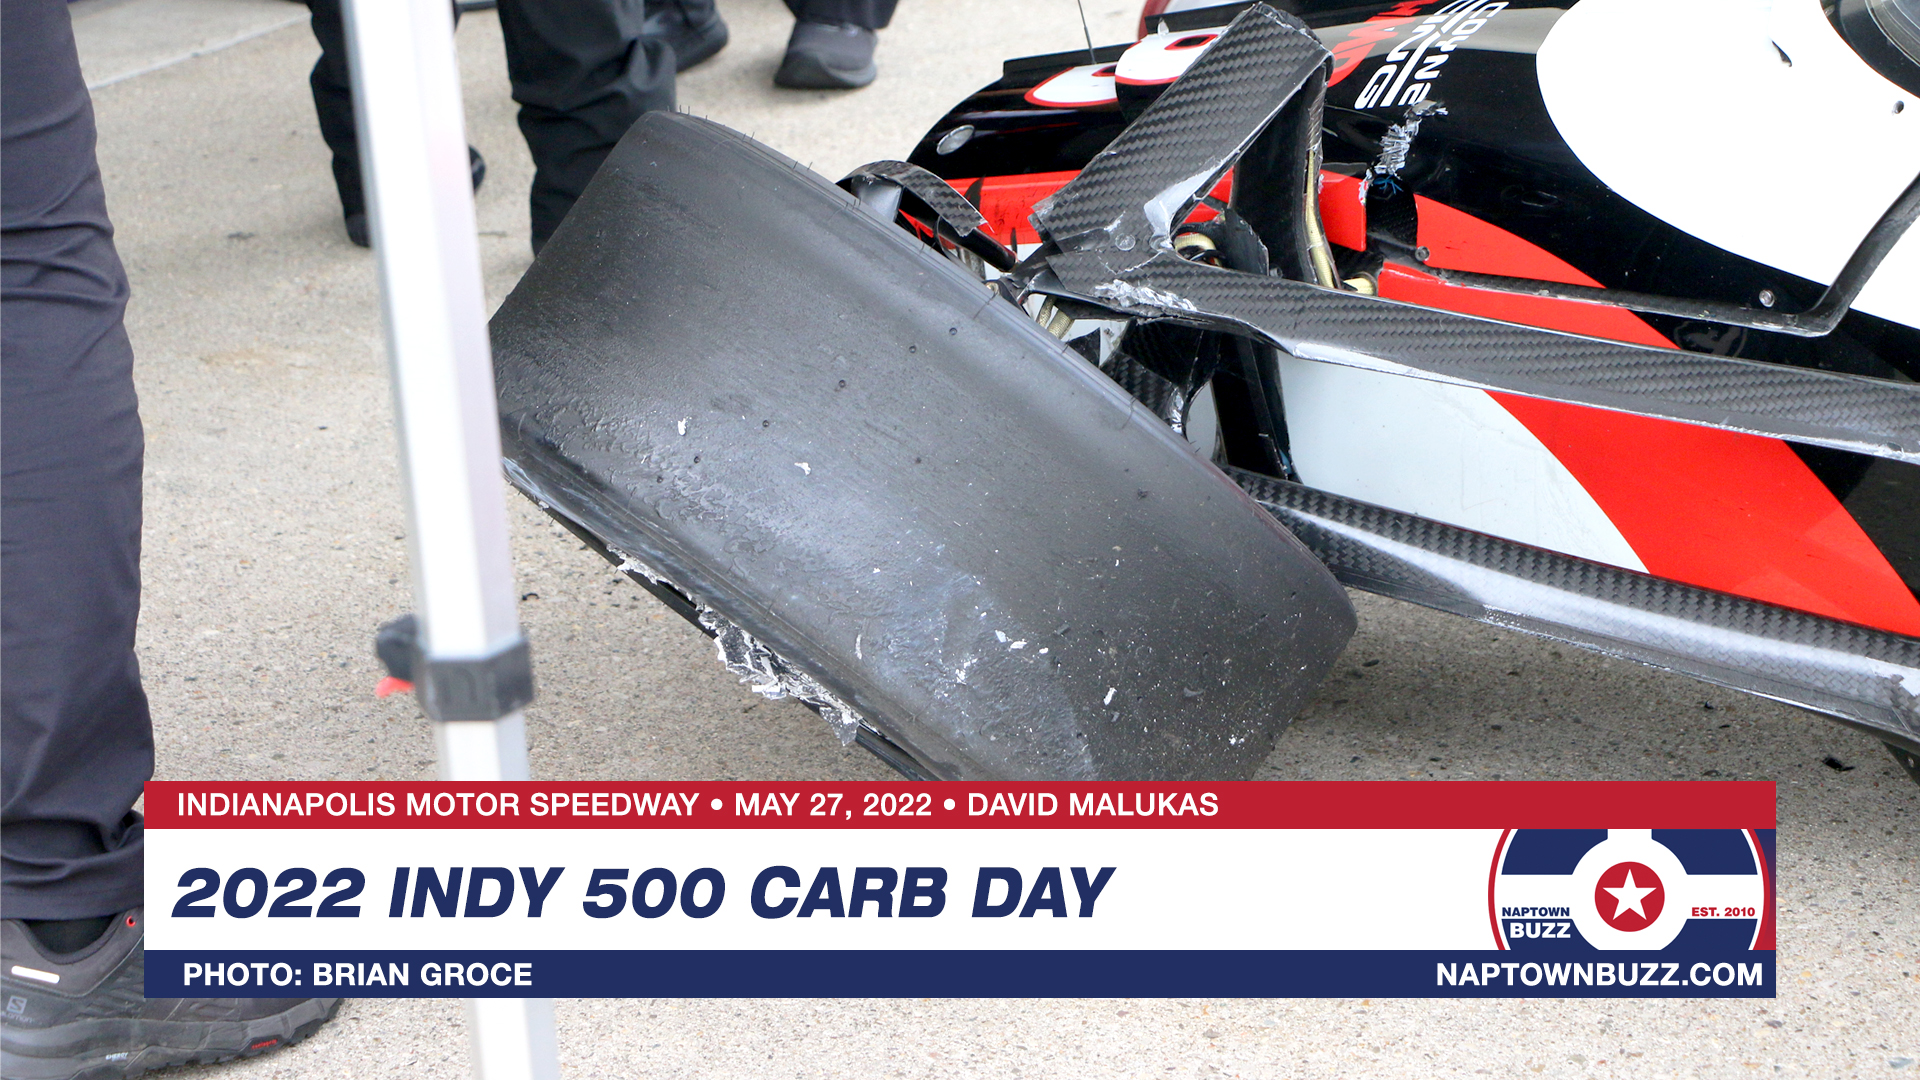 Indy 500 Carb Day May 27, 2022 David Malukas Car Crash